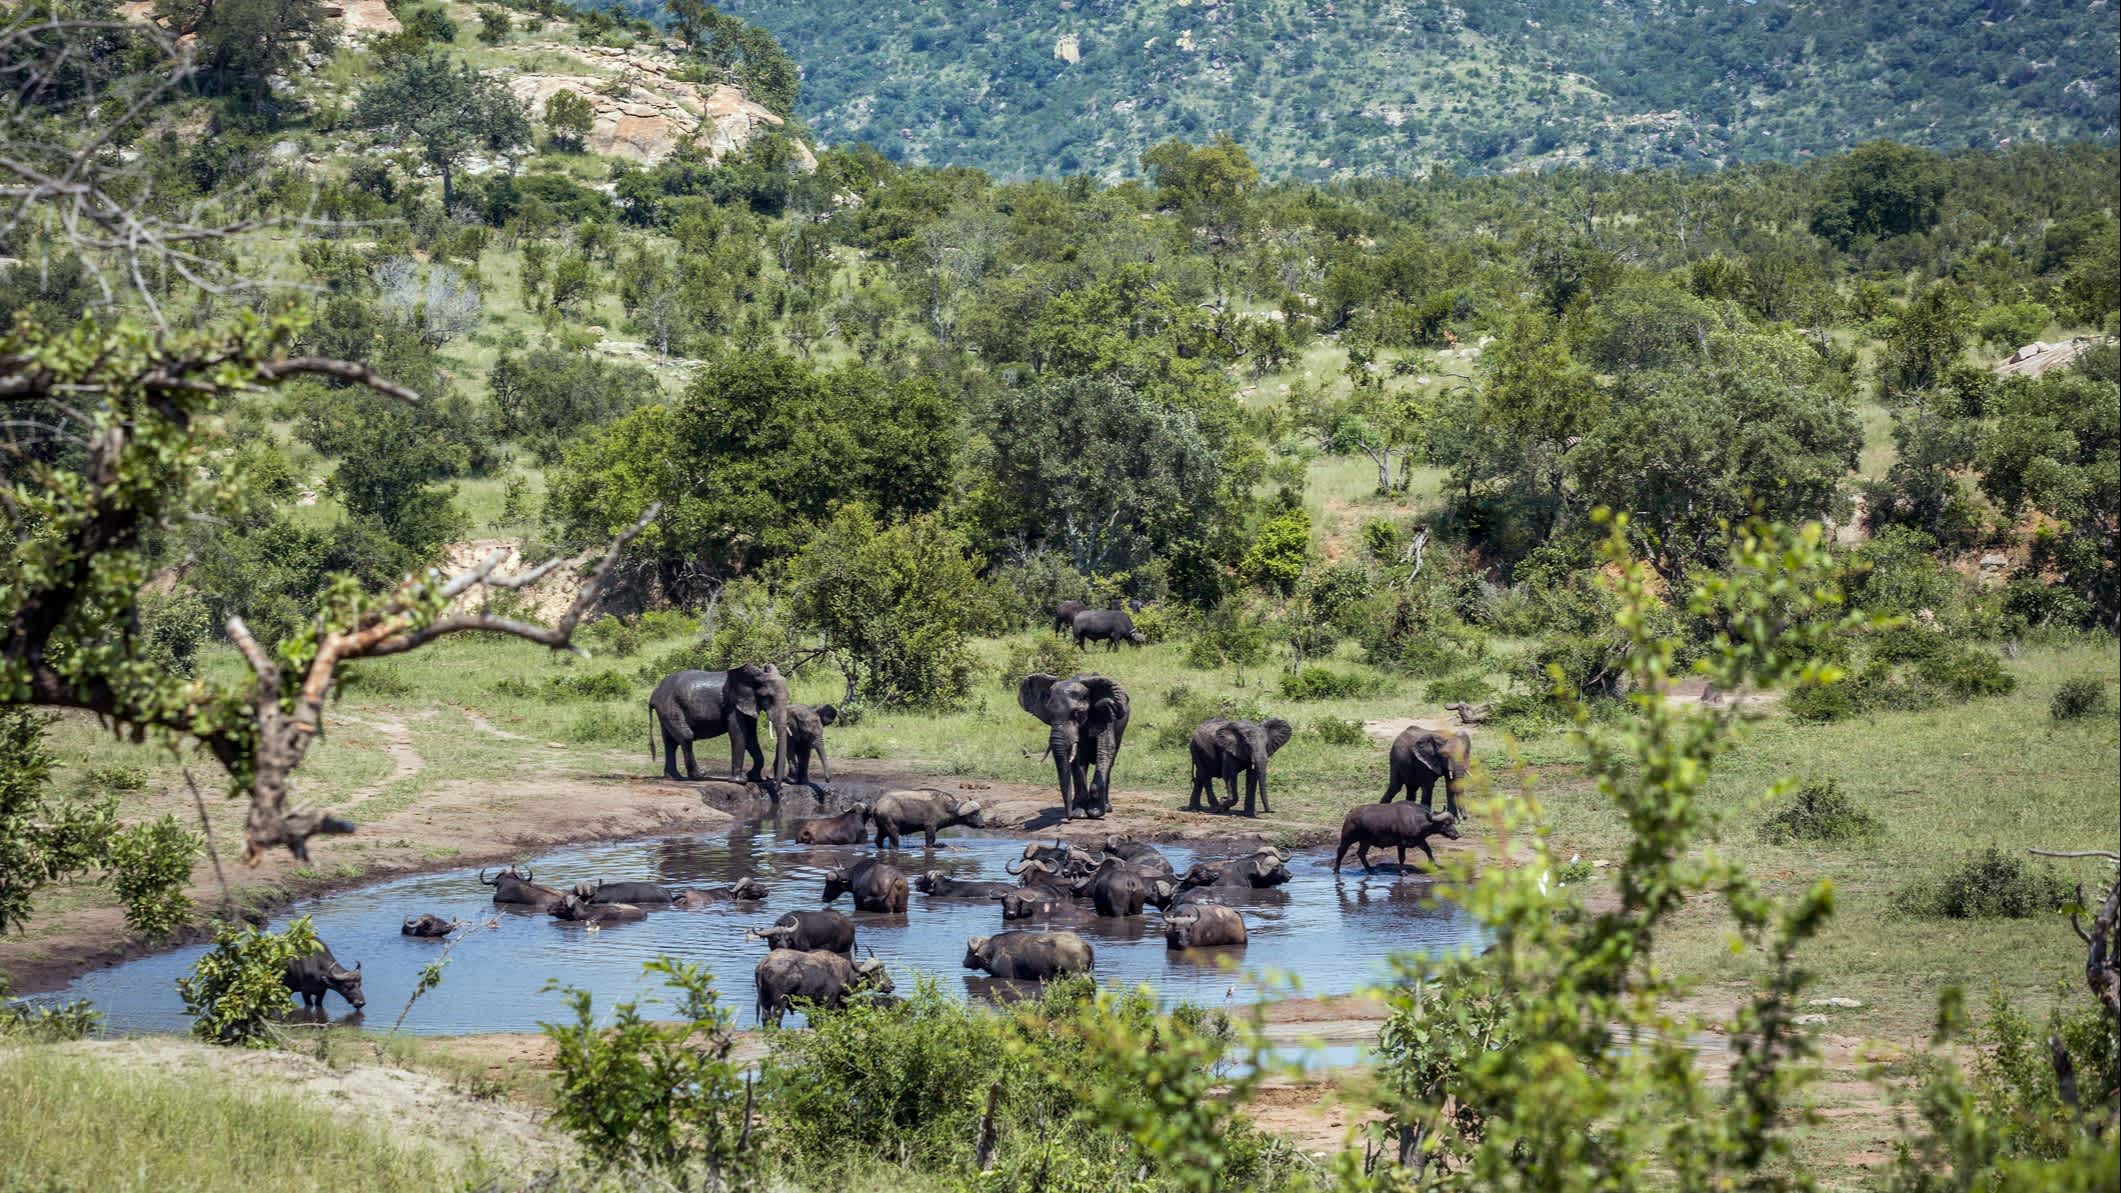 Afrikanischer Buschelefant im Kruger-Nationalpark, Südafrika

